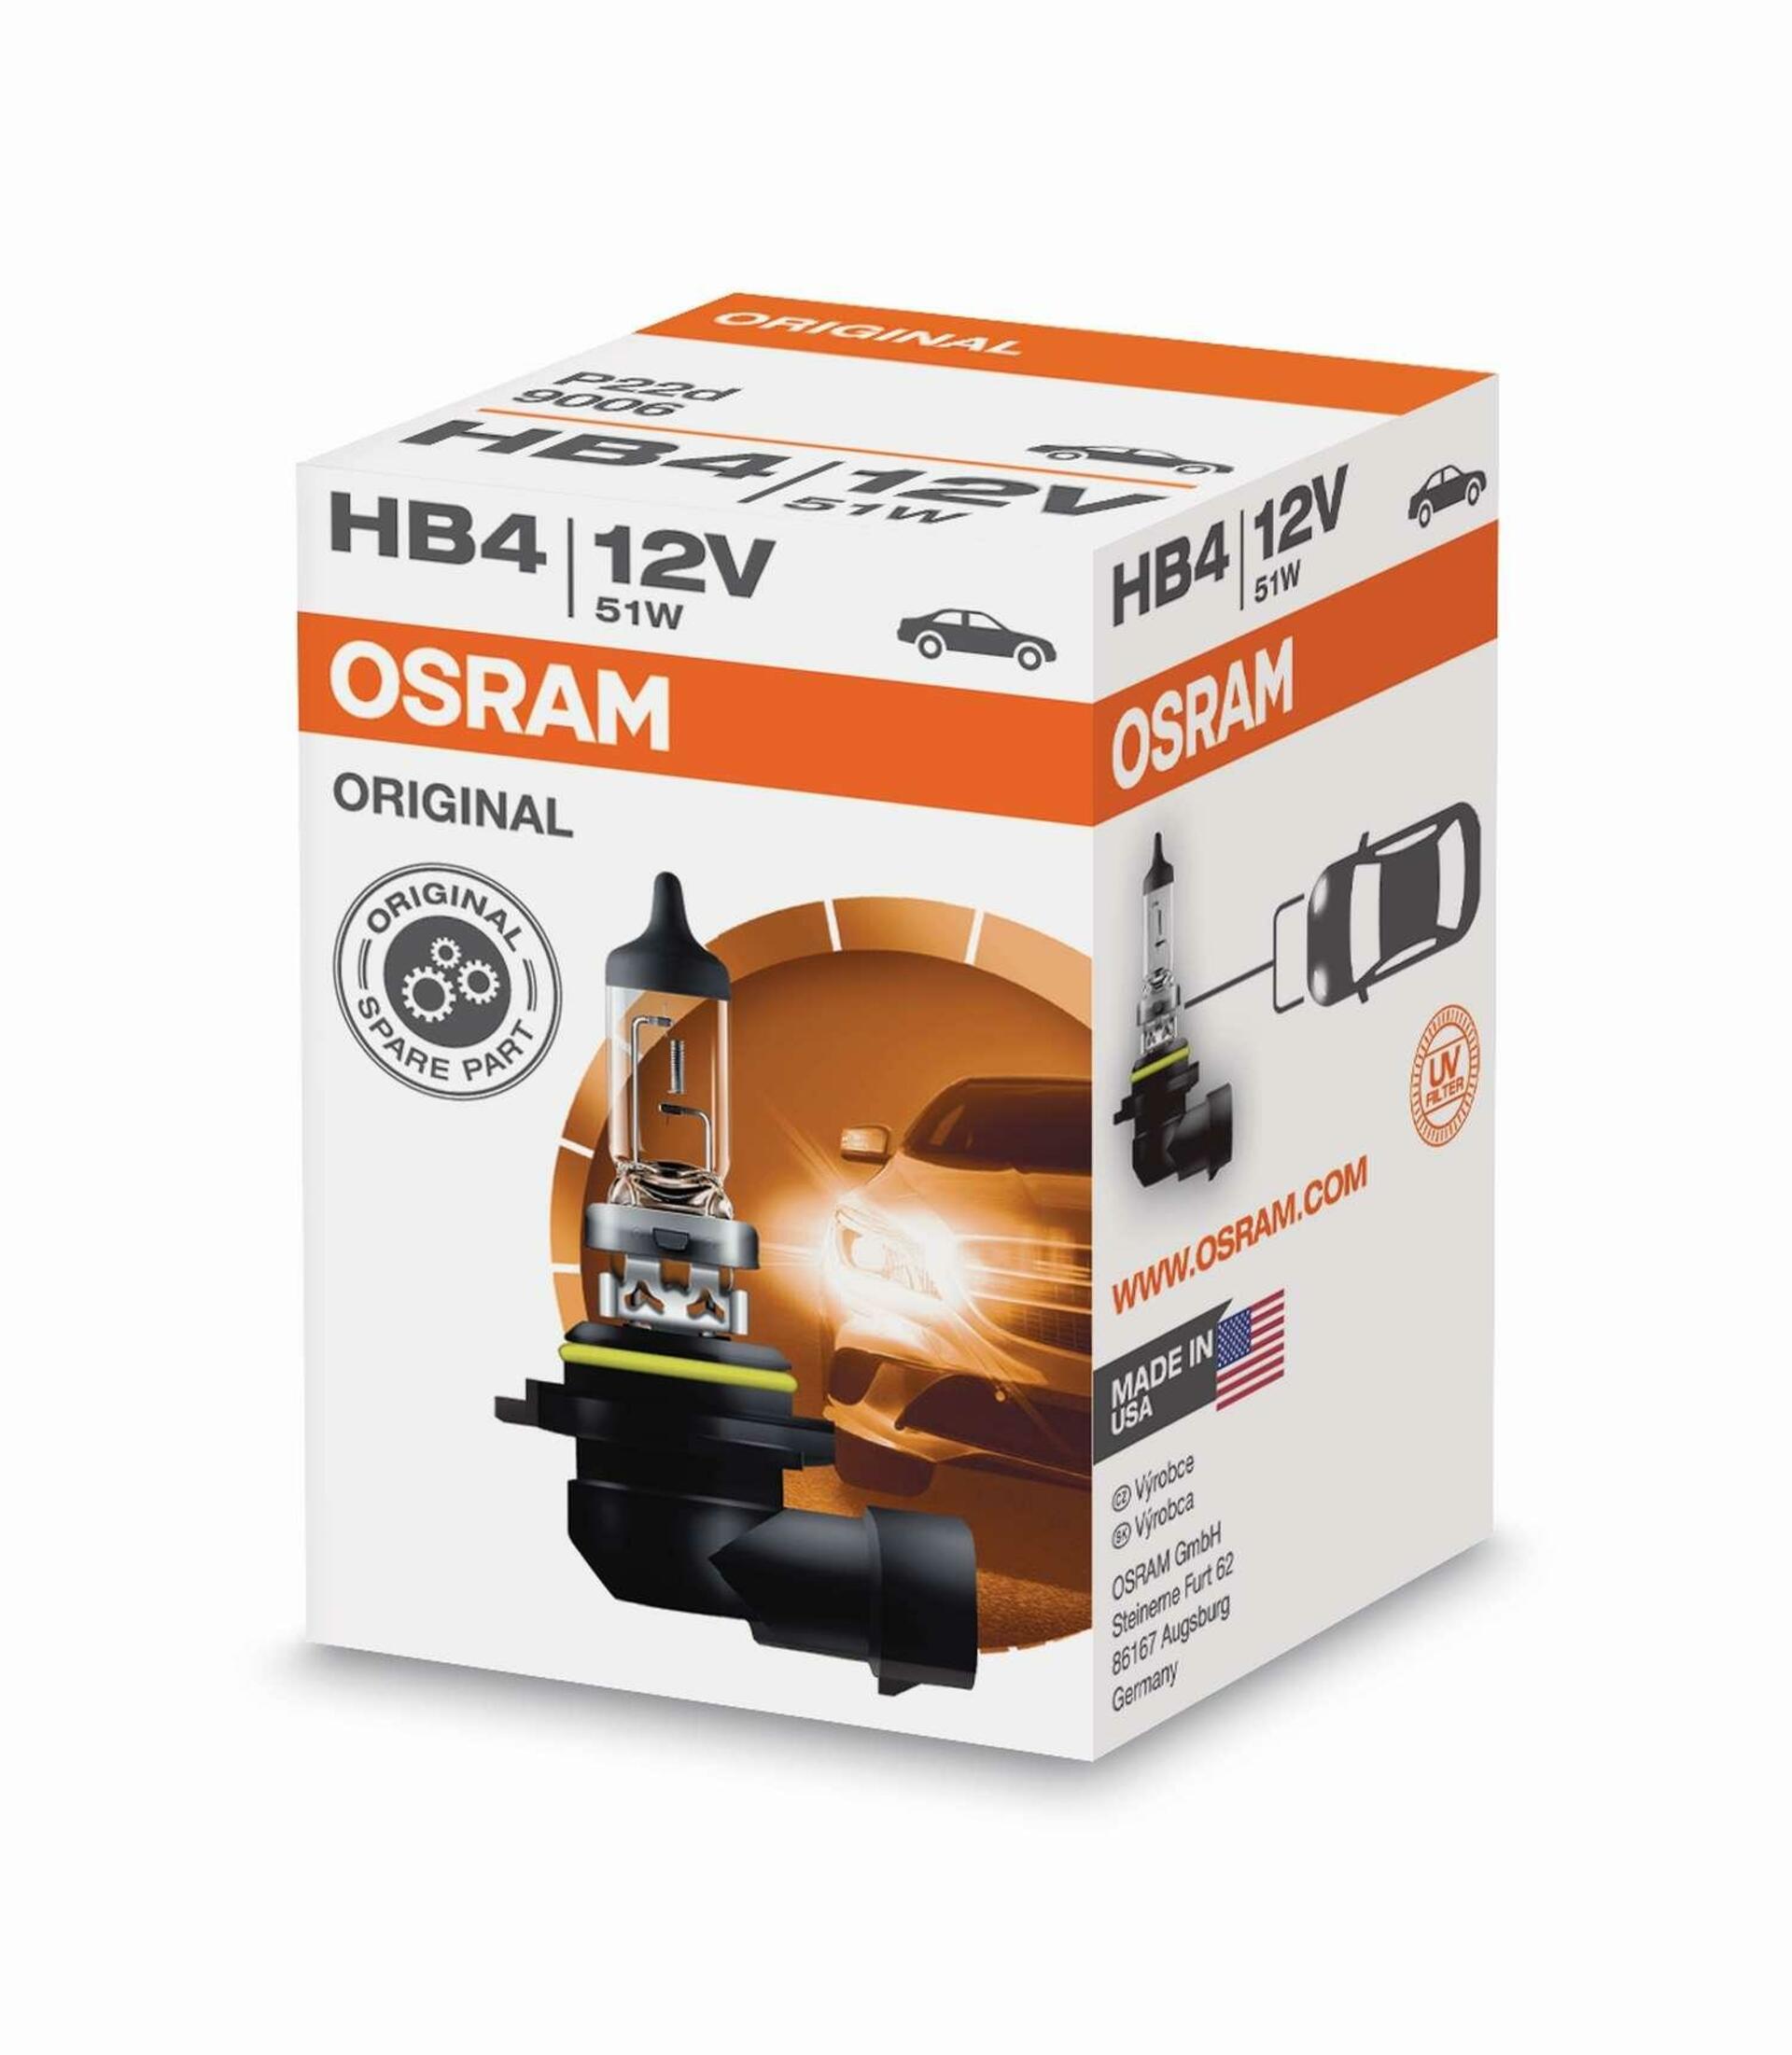 OSRAM HB4 9006 51W 12V P22d